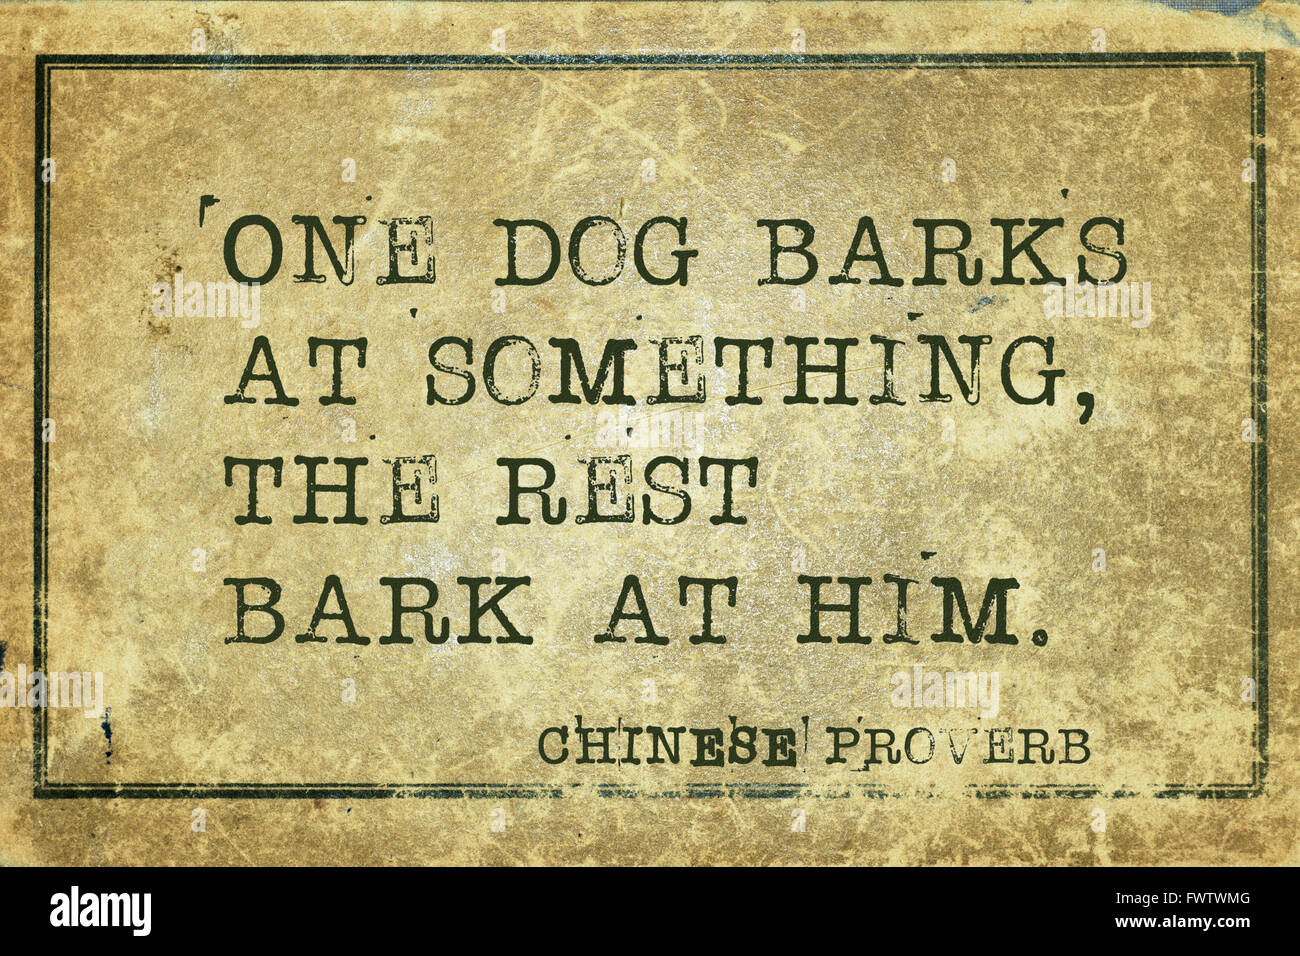 Ein Hund bellt etwas - altes chinesisches Sprichwort auf Grunge Vintage Karton gedruckt Stockfoto